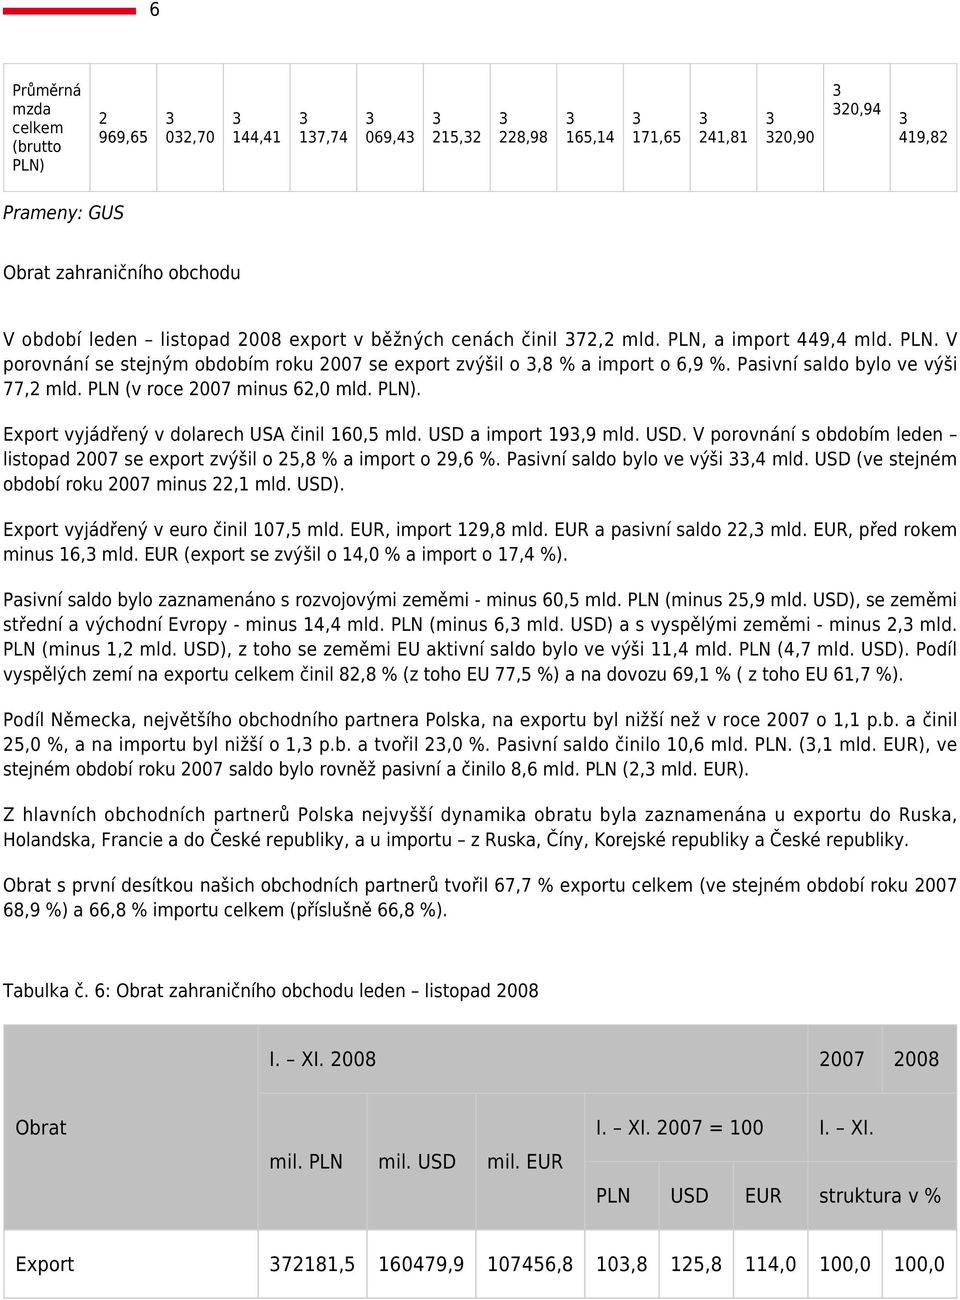 PLN (v roce 2007 minus 62,0 mld. PLN). Export vyjádřený v dolarech USA činil 60,5 mld. USD a import 9,9 mld. USD. V porovnání s obdobím leden listopad 2007 se export zvýšil o 25,8 % a import o 29,6 %.